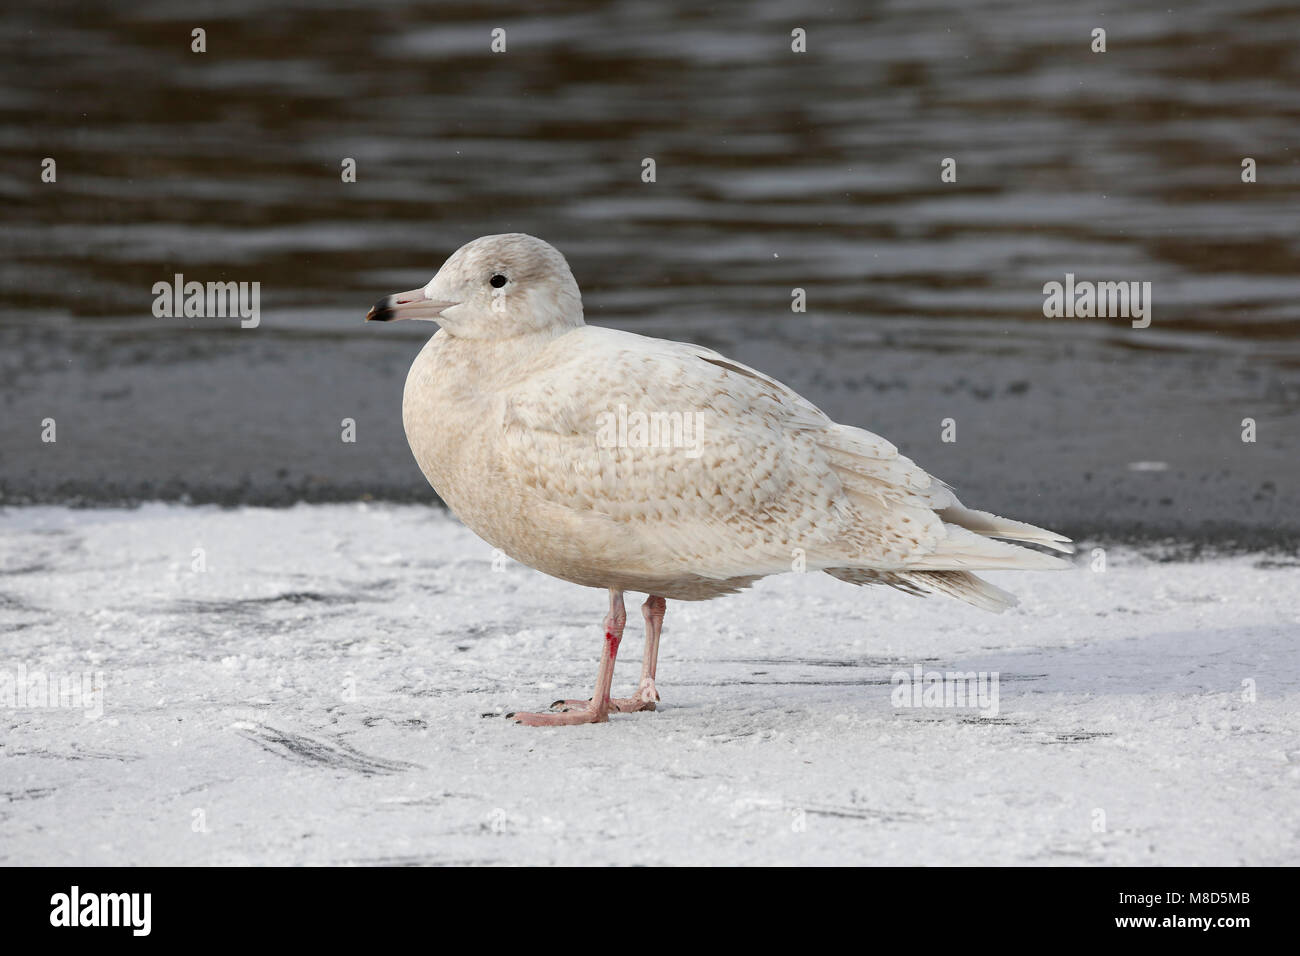 Bird image from Chris van Rijswijk Stock Photo